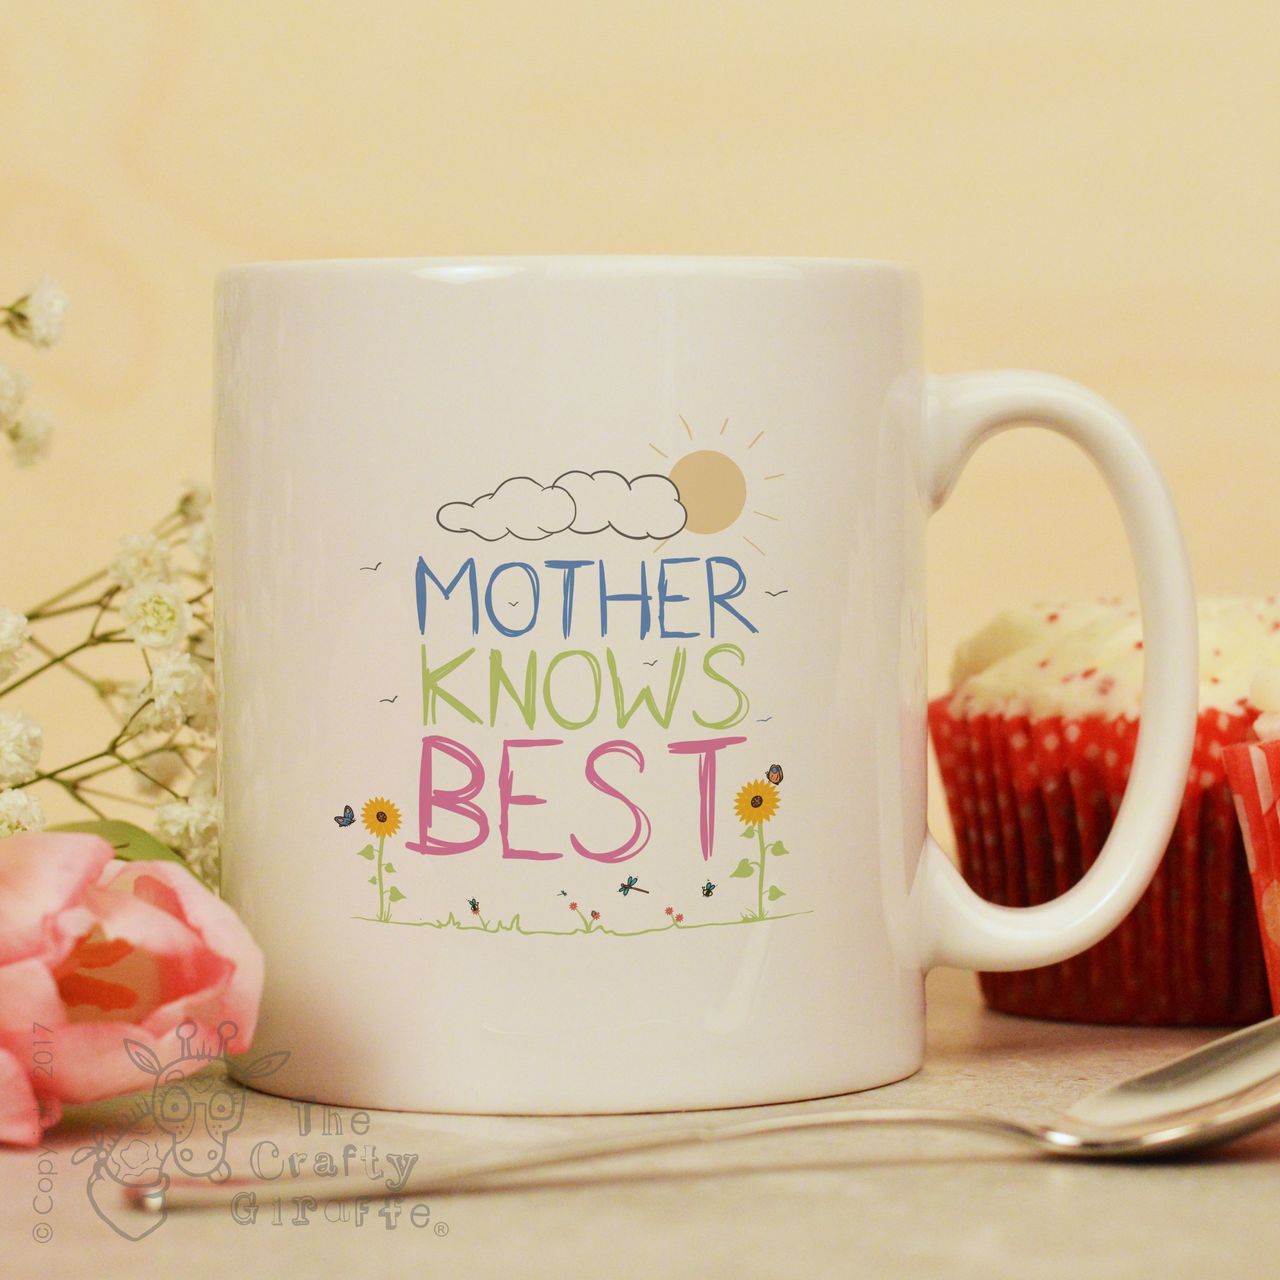 Mother knows best mug